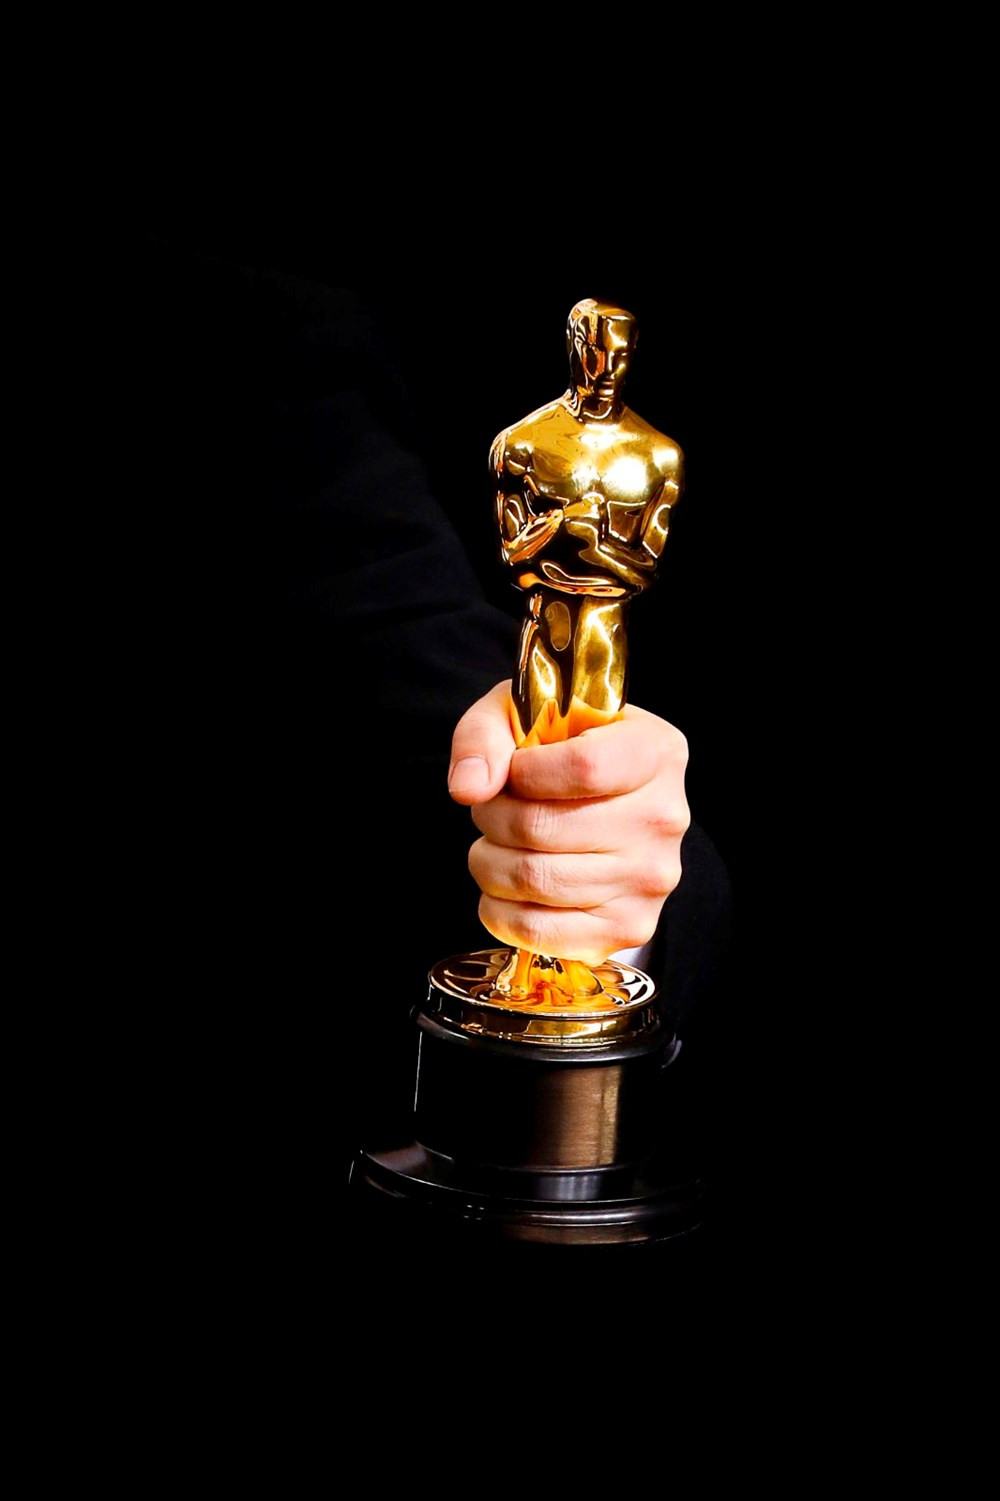 Image The 92nd Annual Academy Awards Oscars